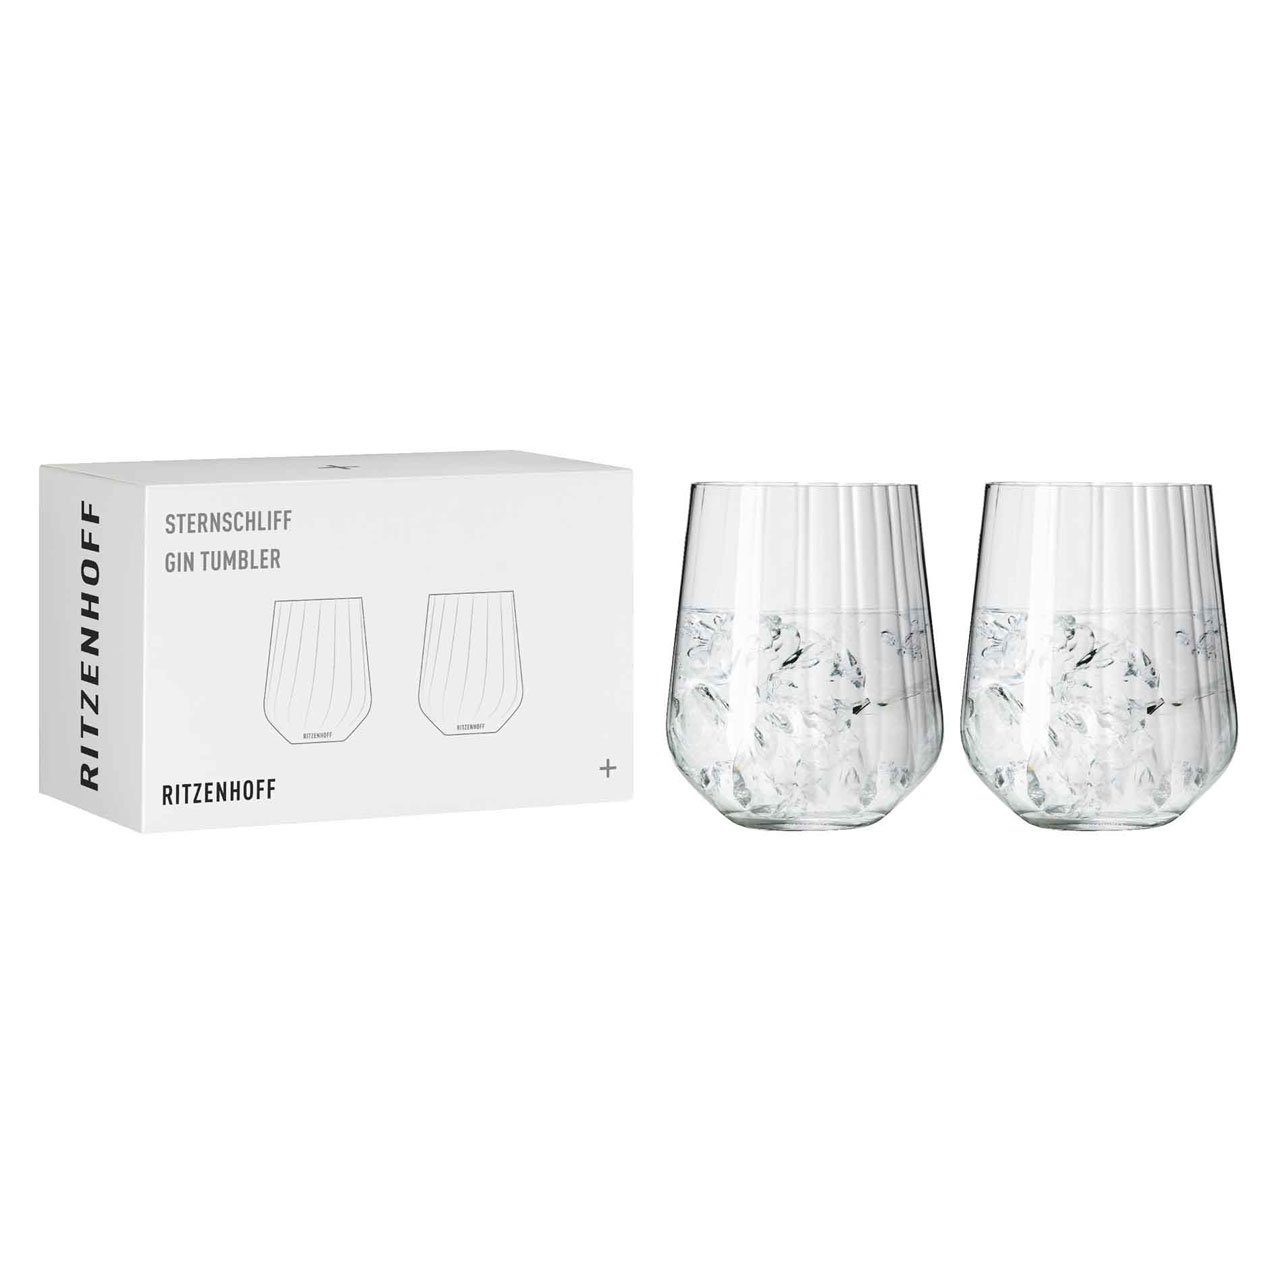 Kristallglas Sternschliff Tumbler Dekomiro 4er, Tumbler-Glas Dekomiro Ritzenhoff Gin